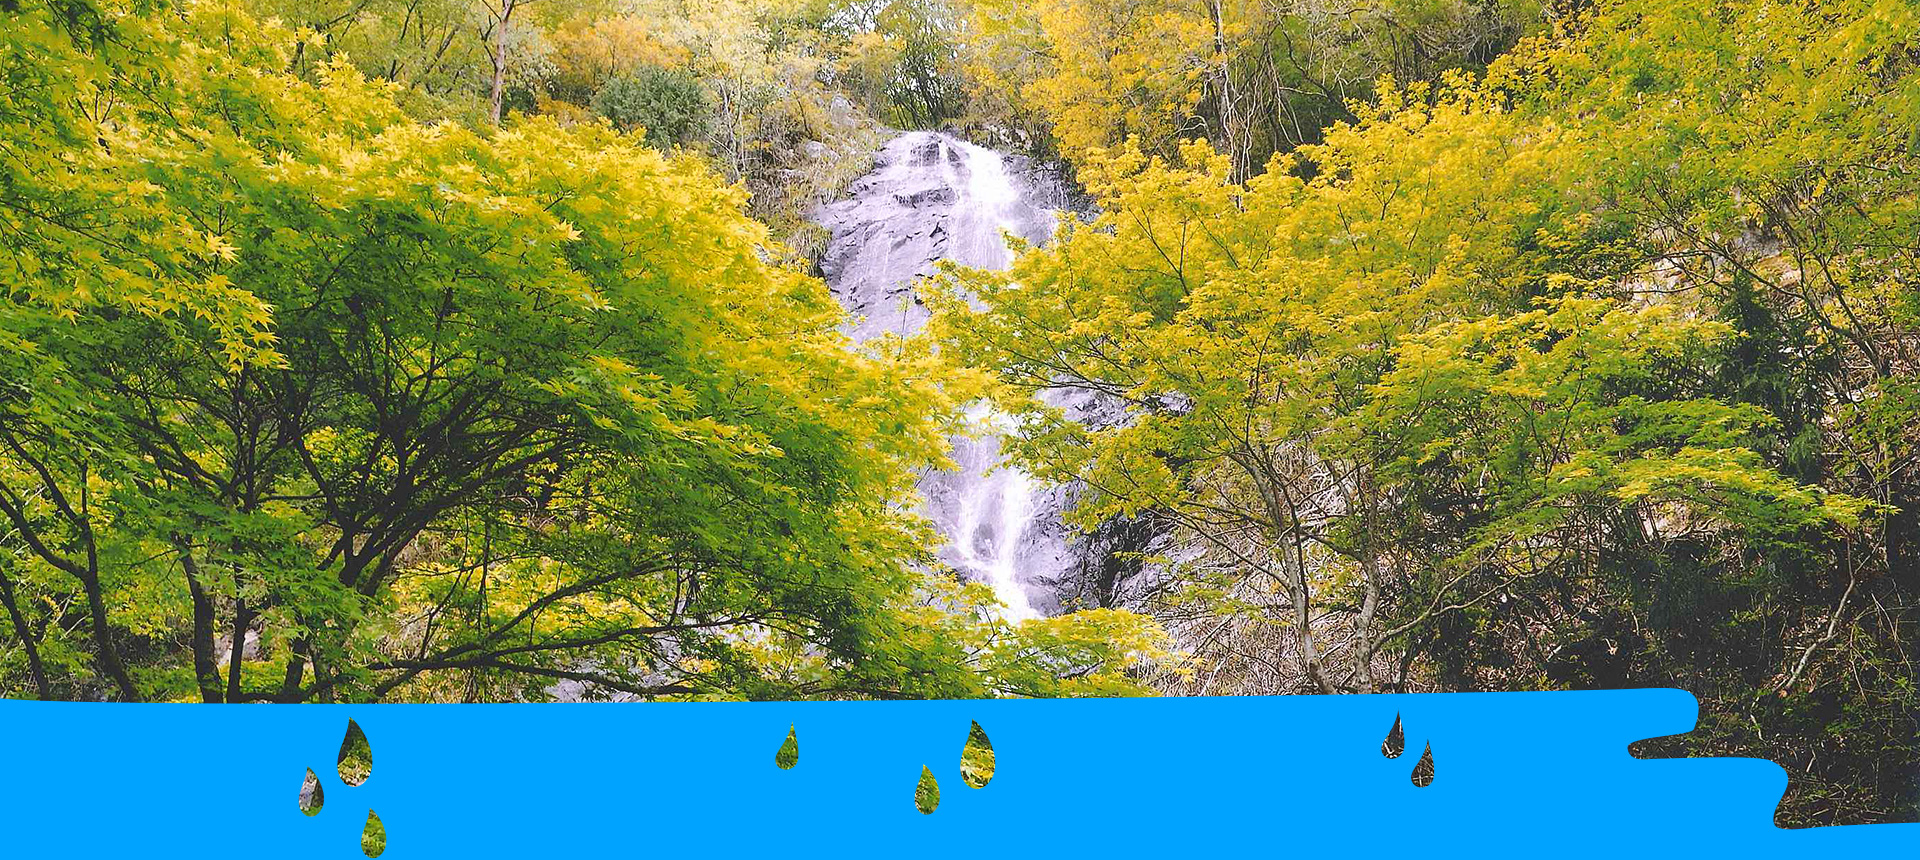 神河町の「名水」「滝」